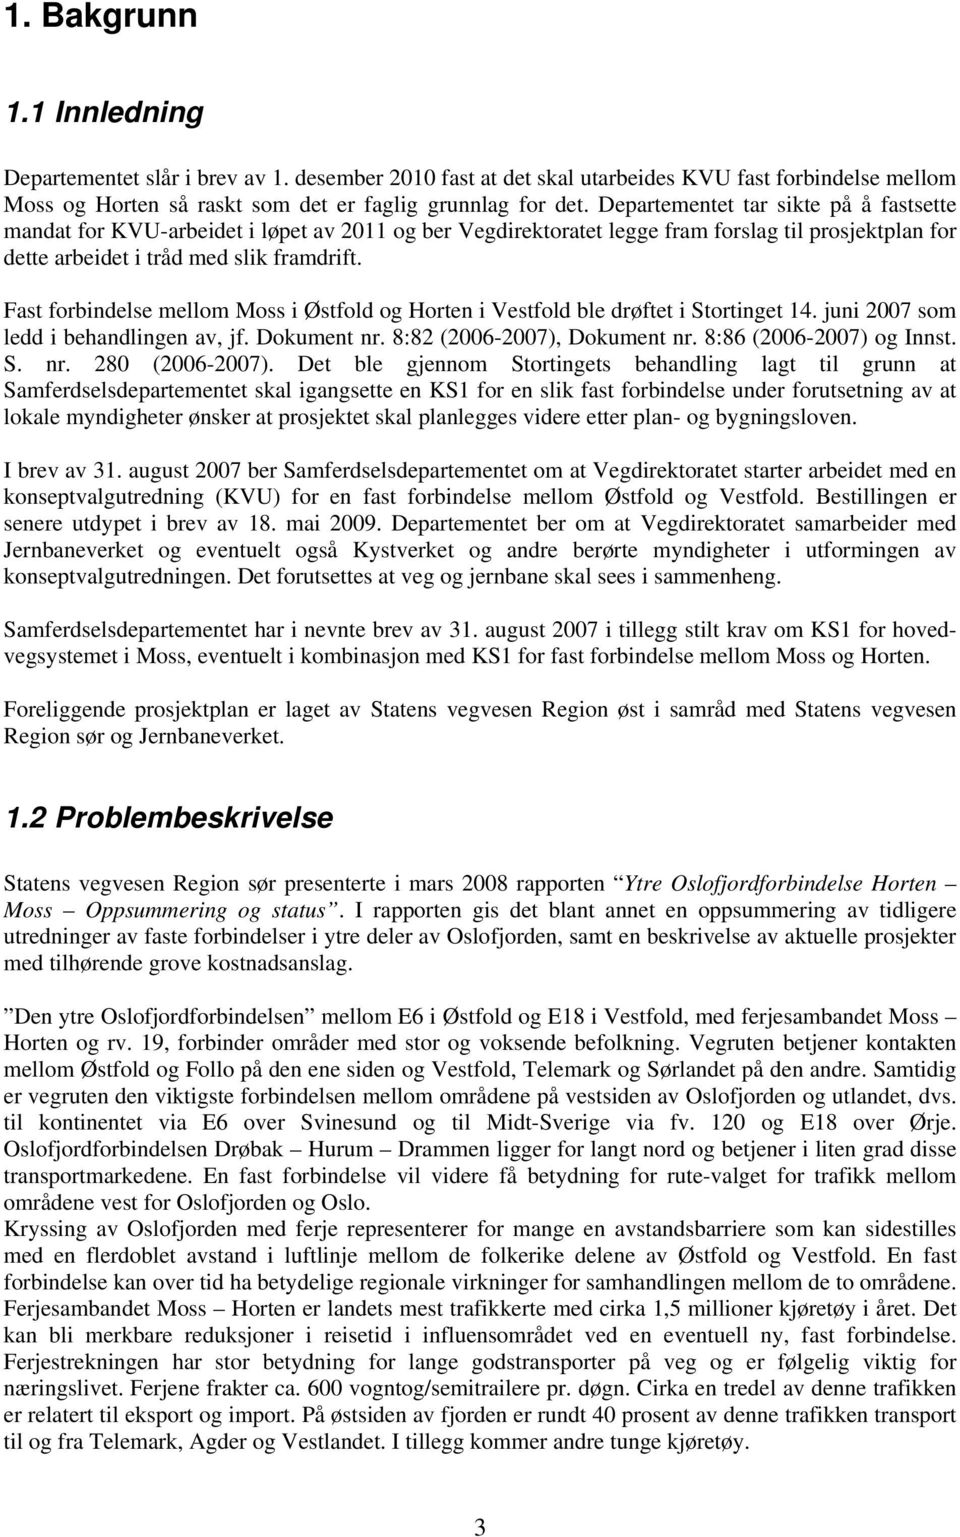 Fast forbindelse mellom Moss i Østfold og Horten i Vestfold ble drøftet i Stortinget 14. juni 2007 som ledd i behandlingen av, jf. Dokument nr. 8:82 (2006-2007), Dokument nr.